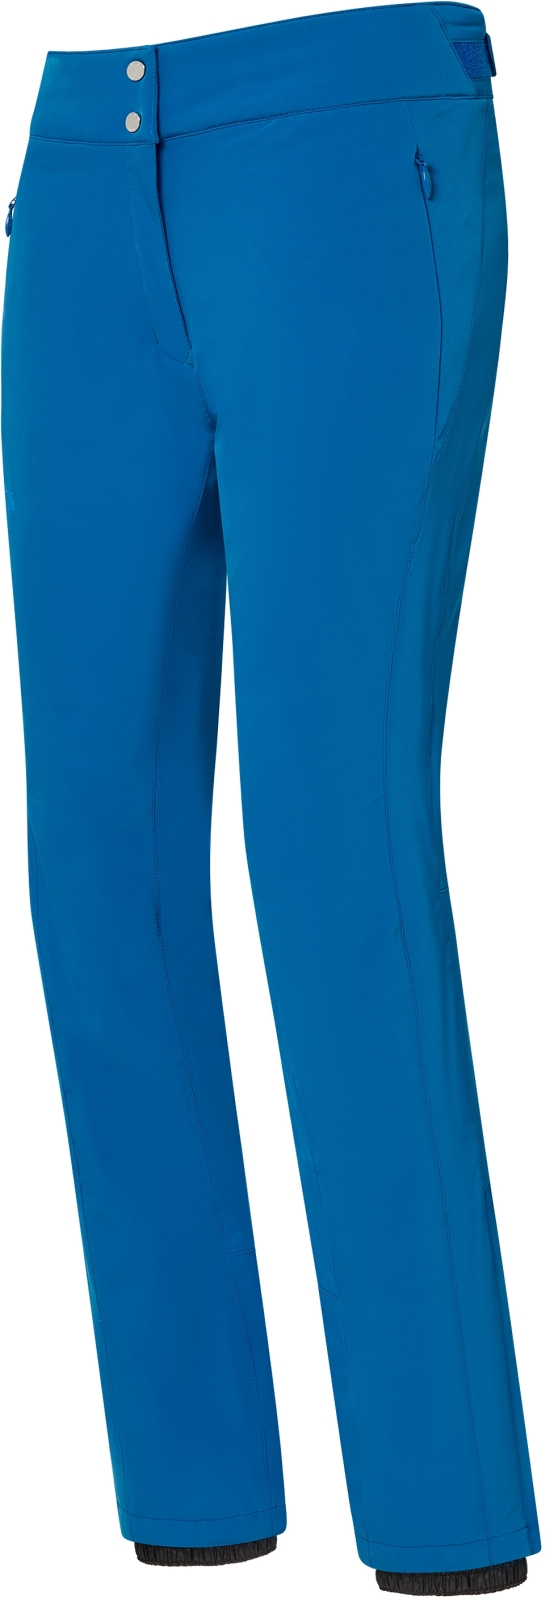 Levně Descente Dámské lyžařské kalhoty Giselle Insulated Pants - Lapis Blue M